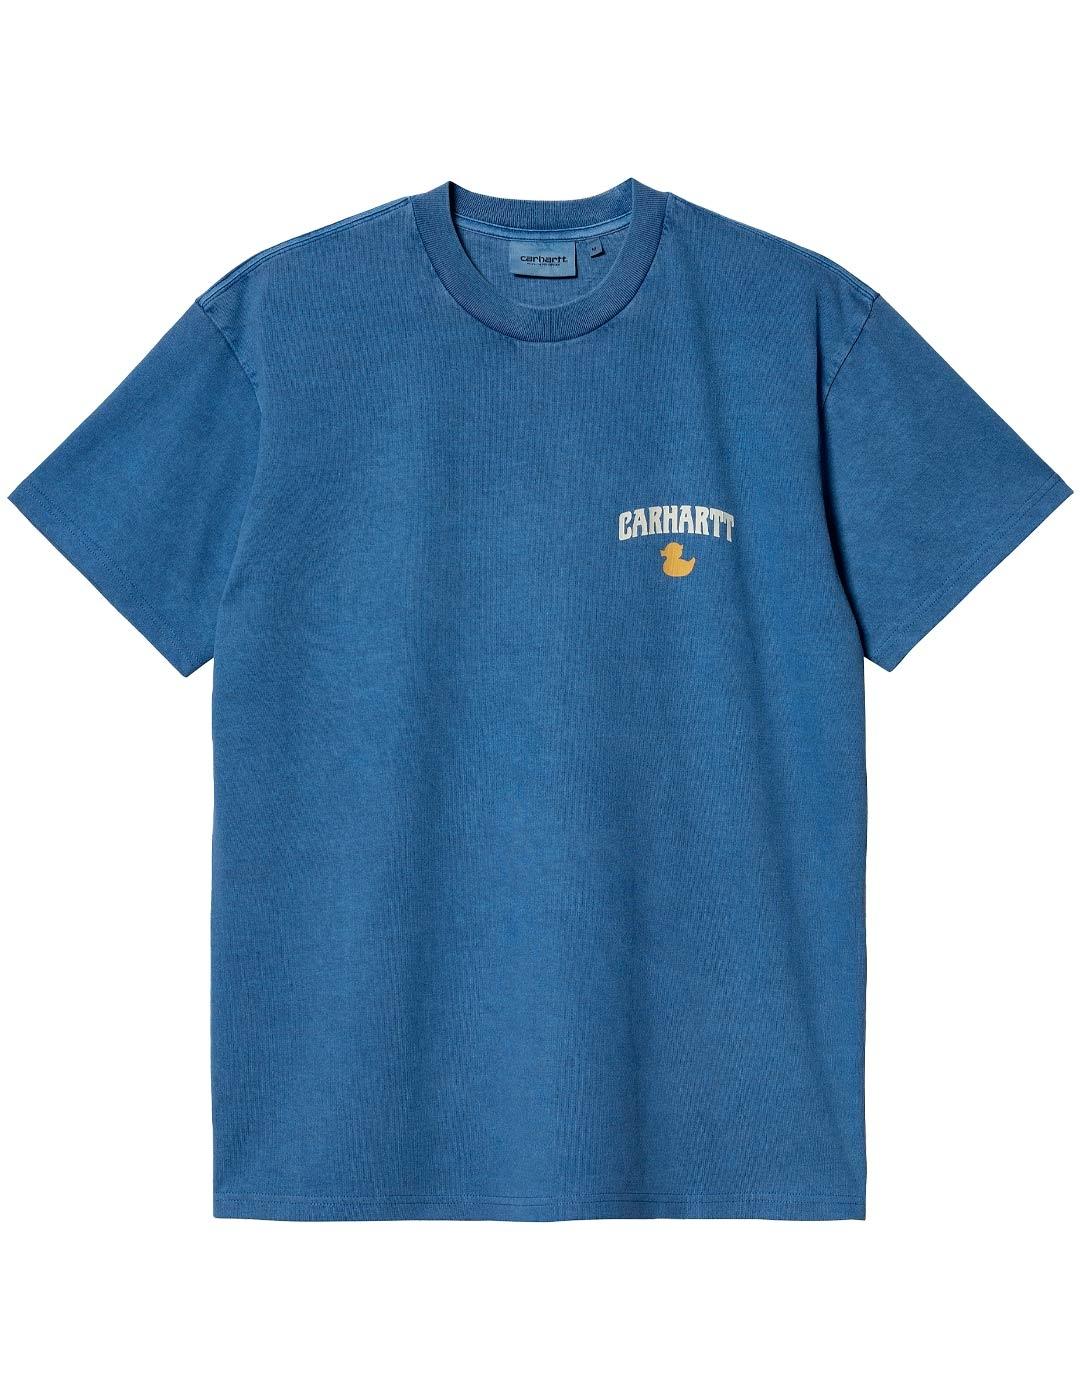 T-shirt Carhartt Wip Duckin Bleue